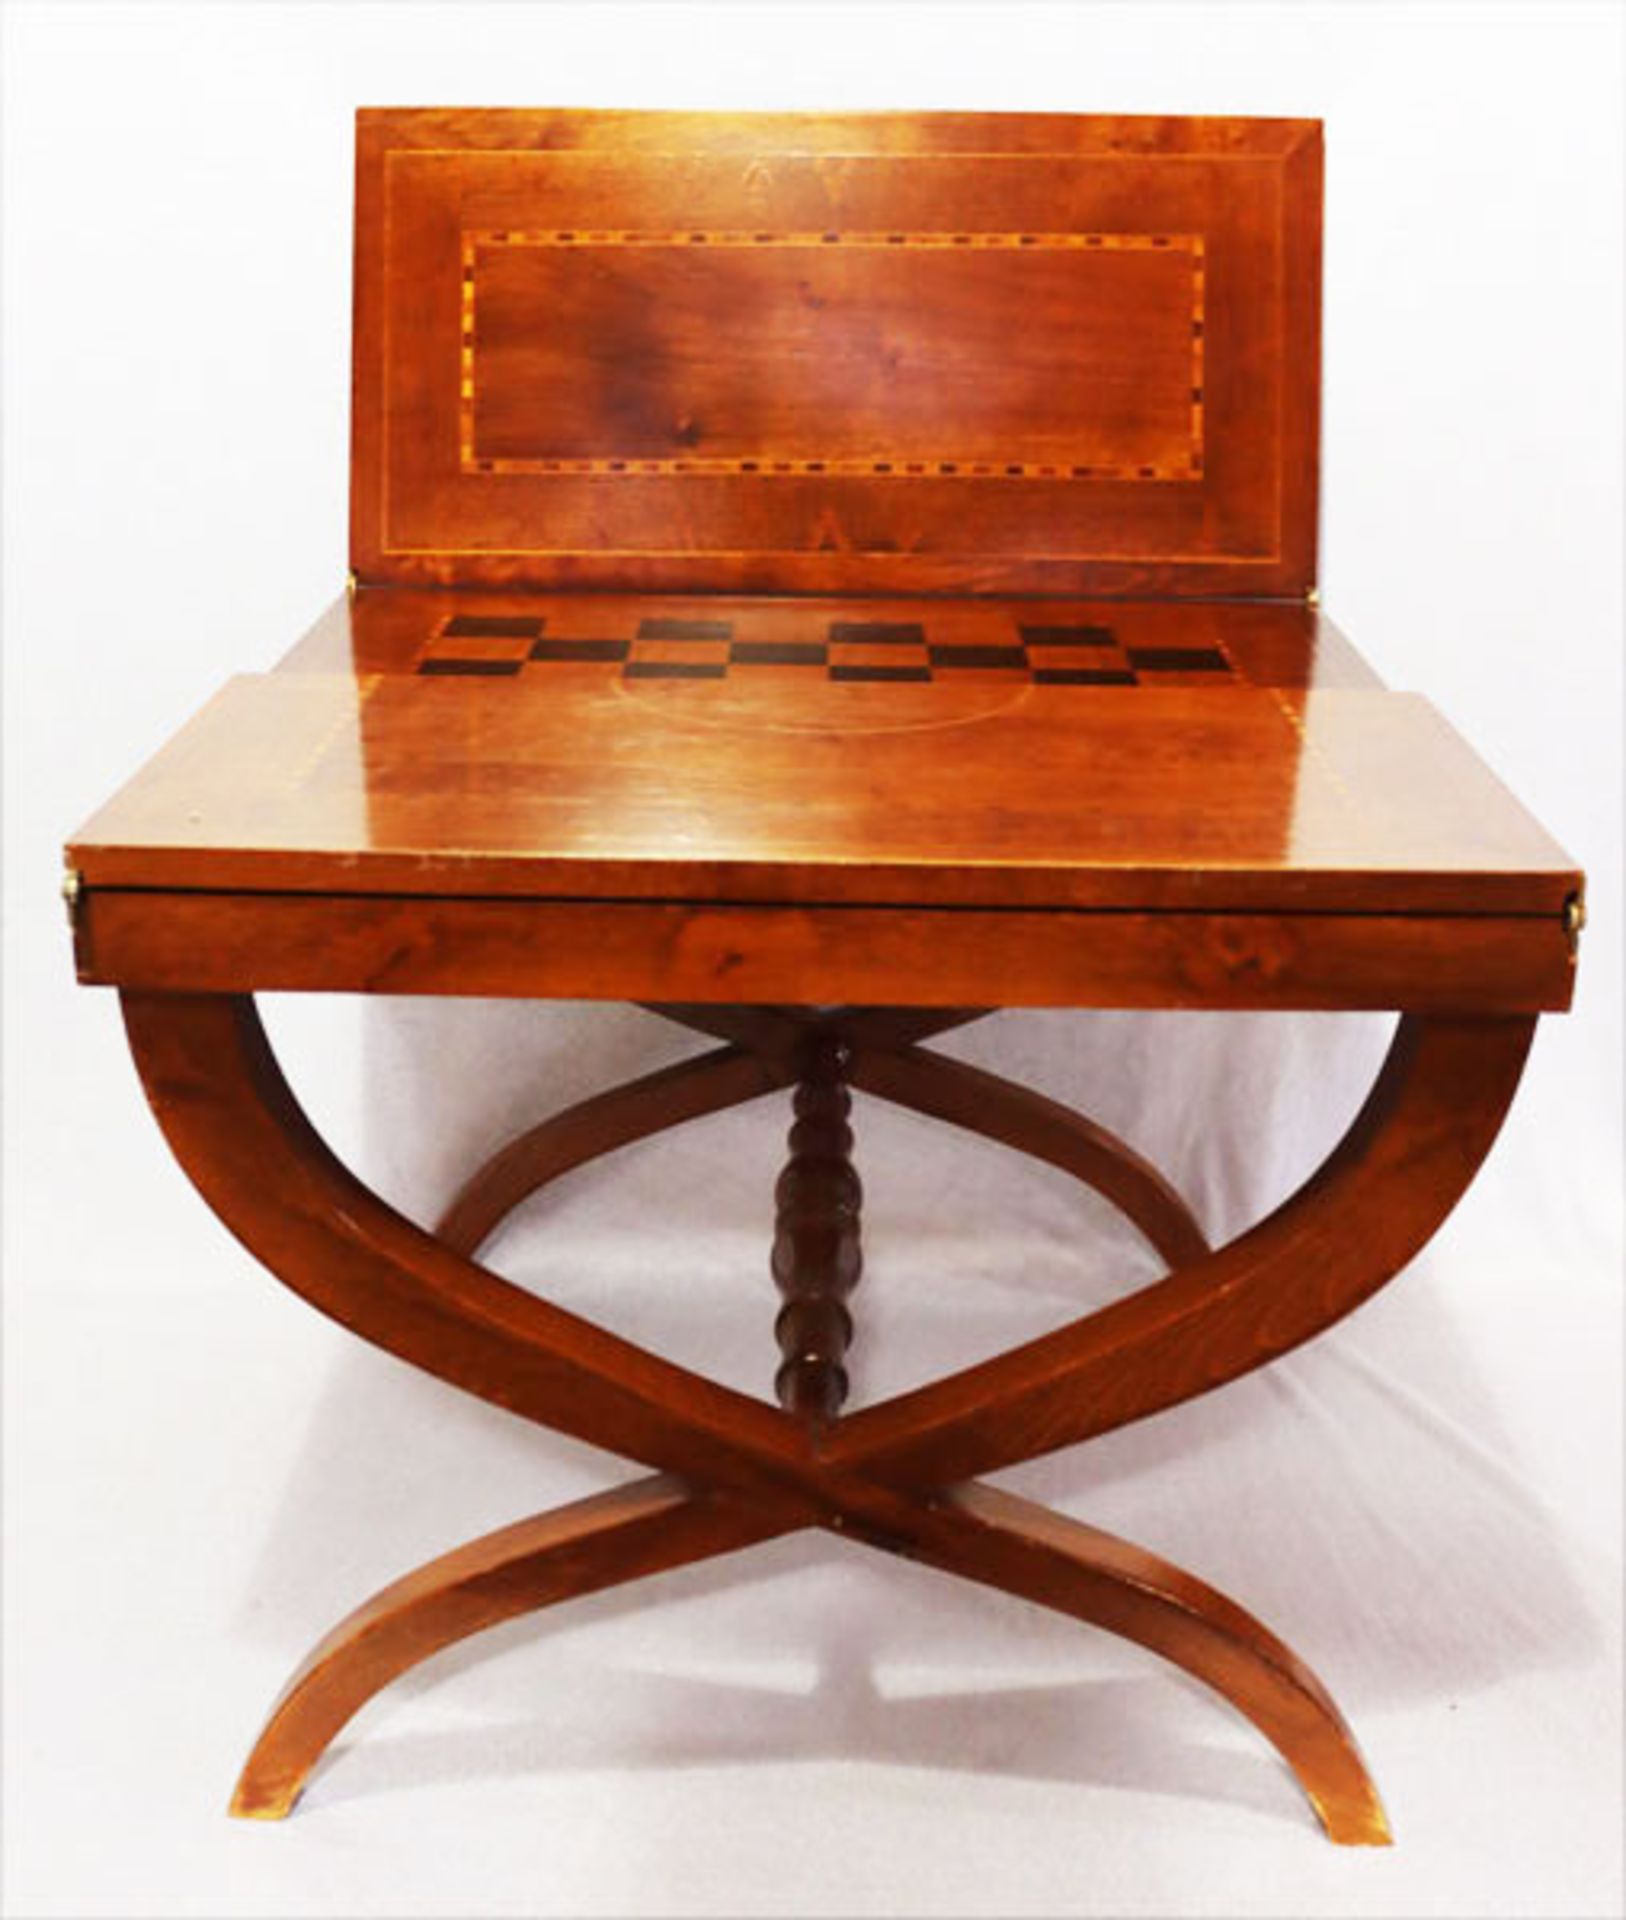 Beistelltisch auf Kreuzbeinen, Tischplatte aufklappbar, innen mit Schachbrettdekor, H 45 cm, B